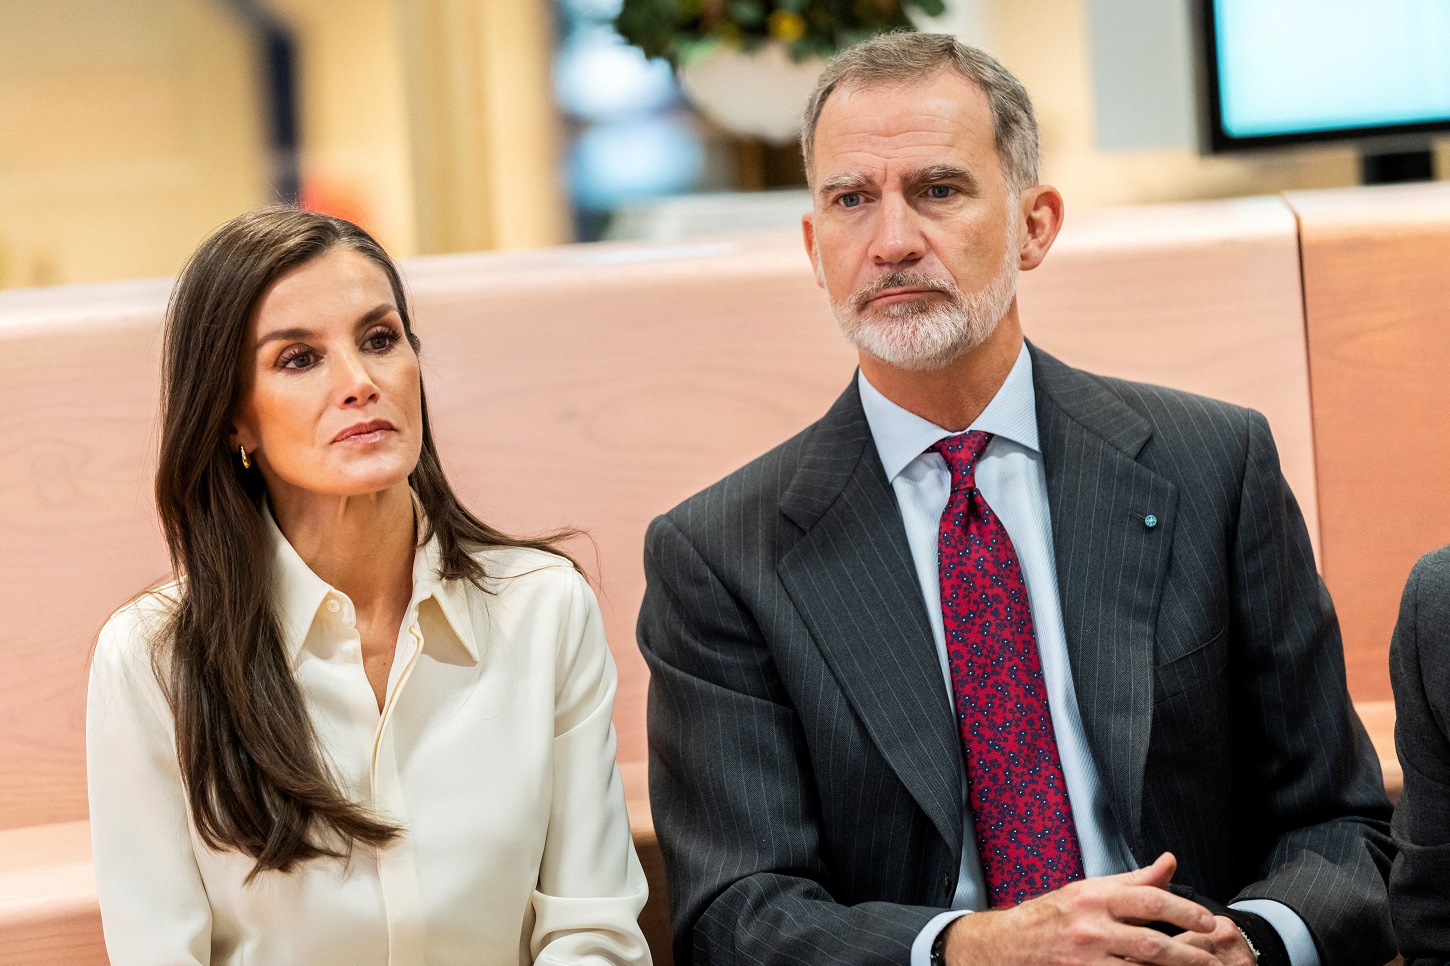 El rey Felipe VI y la reina Letizia, durante su visita oficial a Dinamarca el pasado noviembre. REUTERS/Ritzau Scanpix/Ida Marie Odgaard